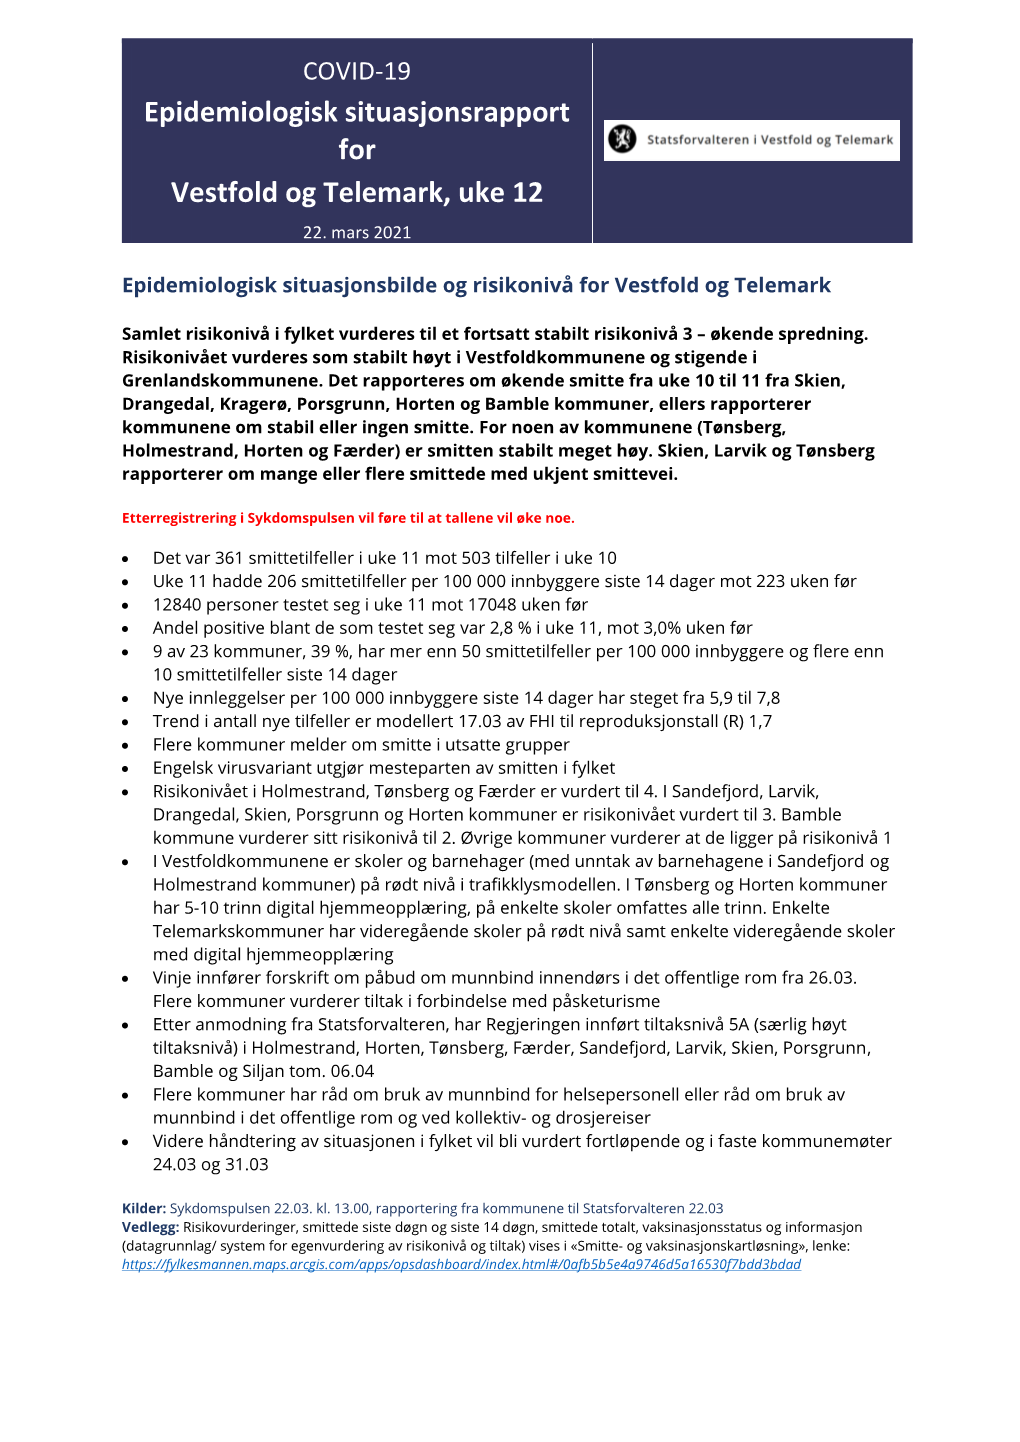 Epidemiologisk Situasjonsrapport for Vestfold Og Telemark, Uke 12